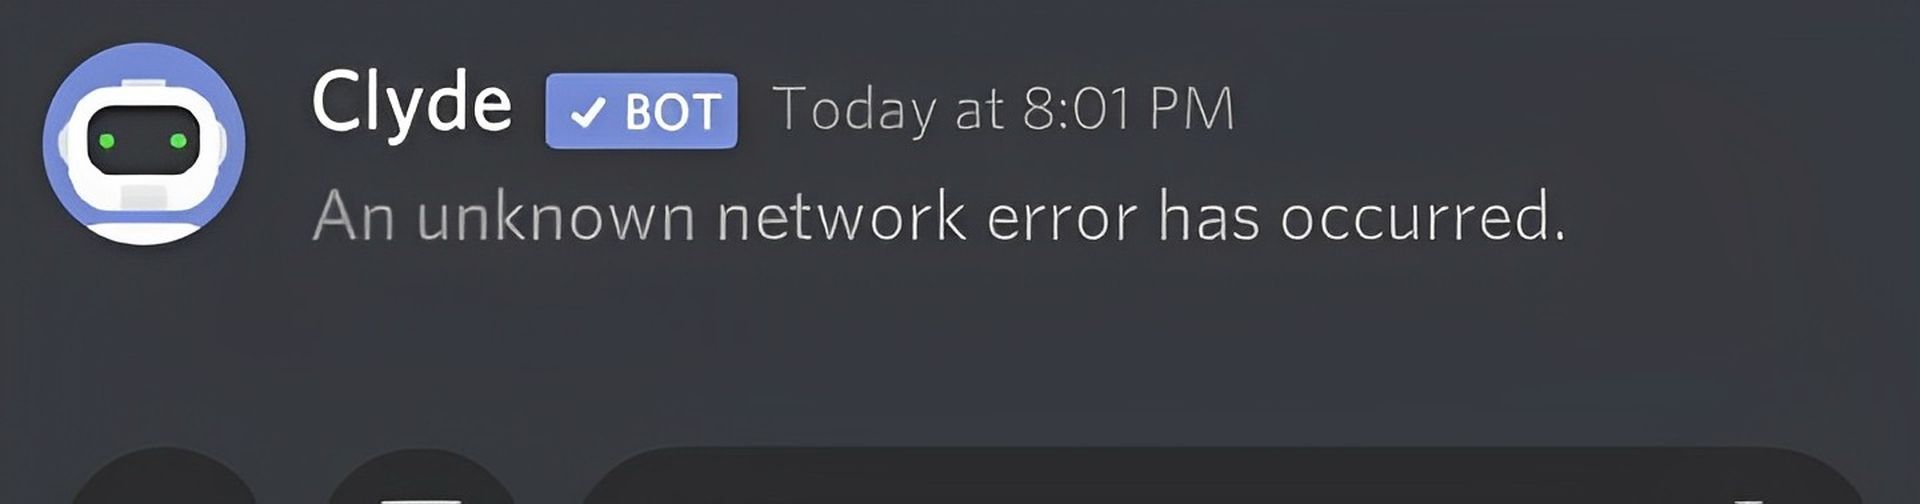 Discord unknown network error